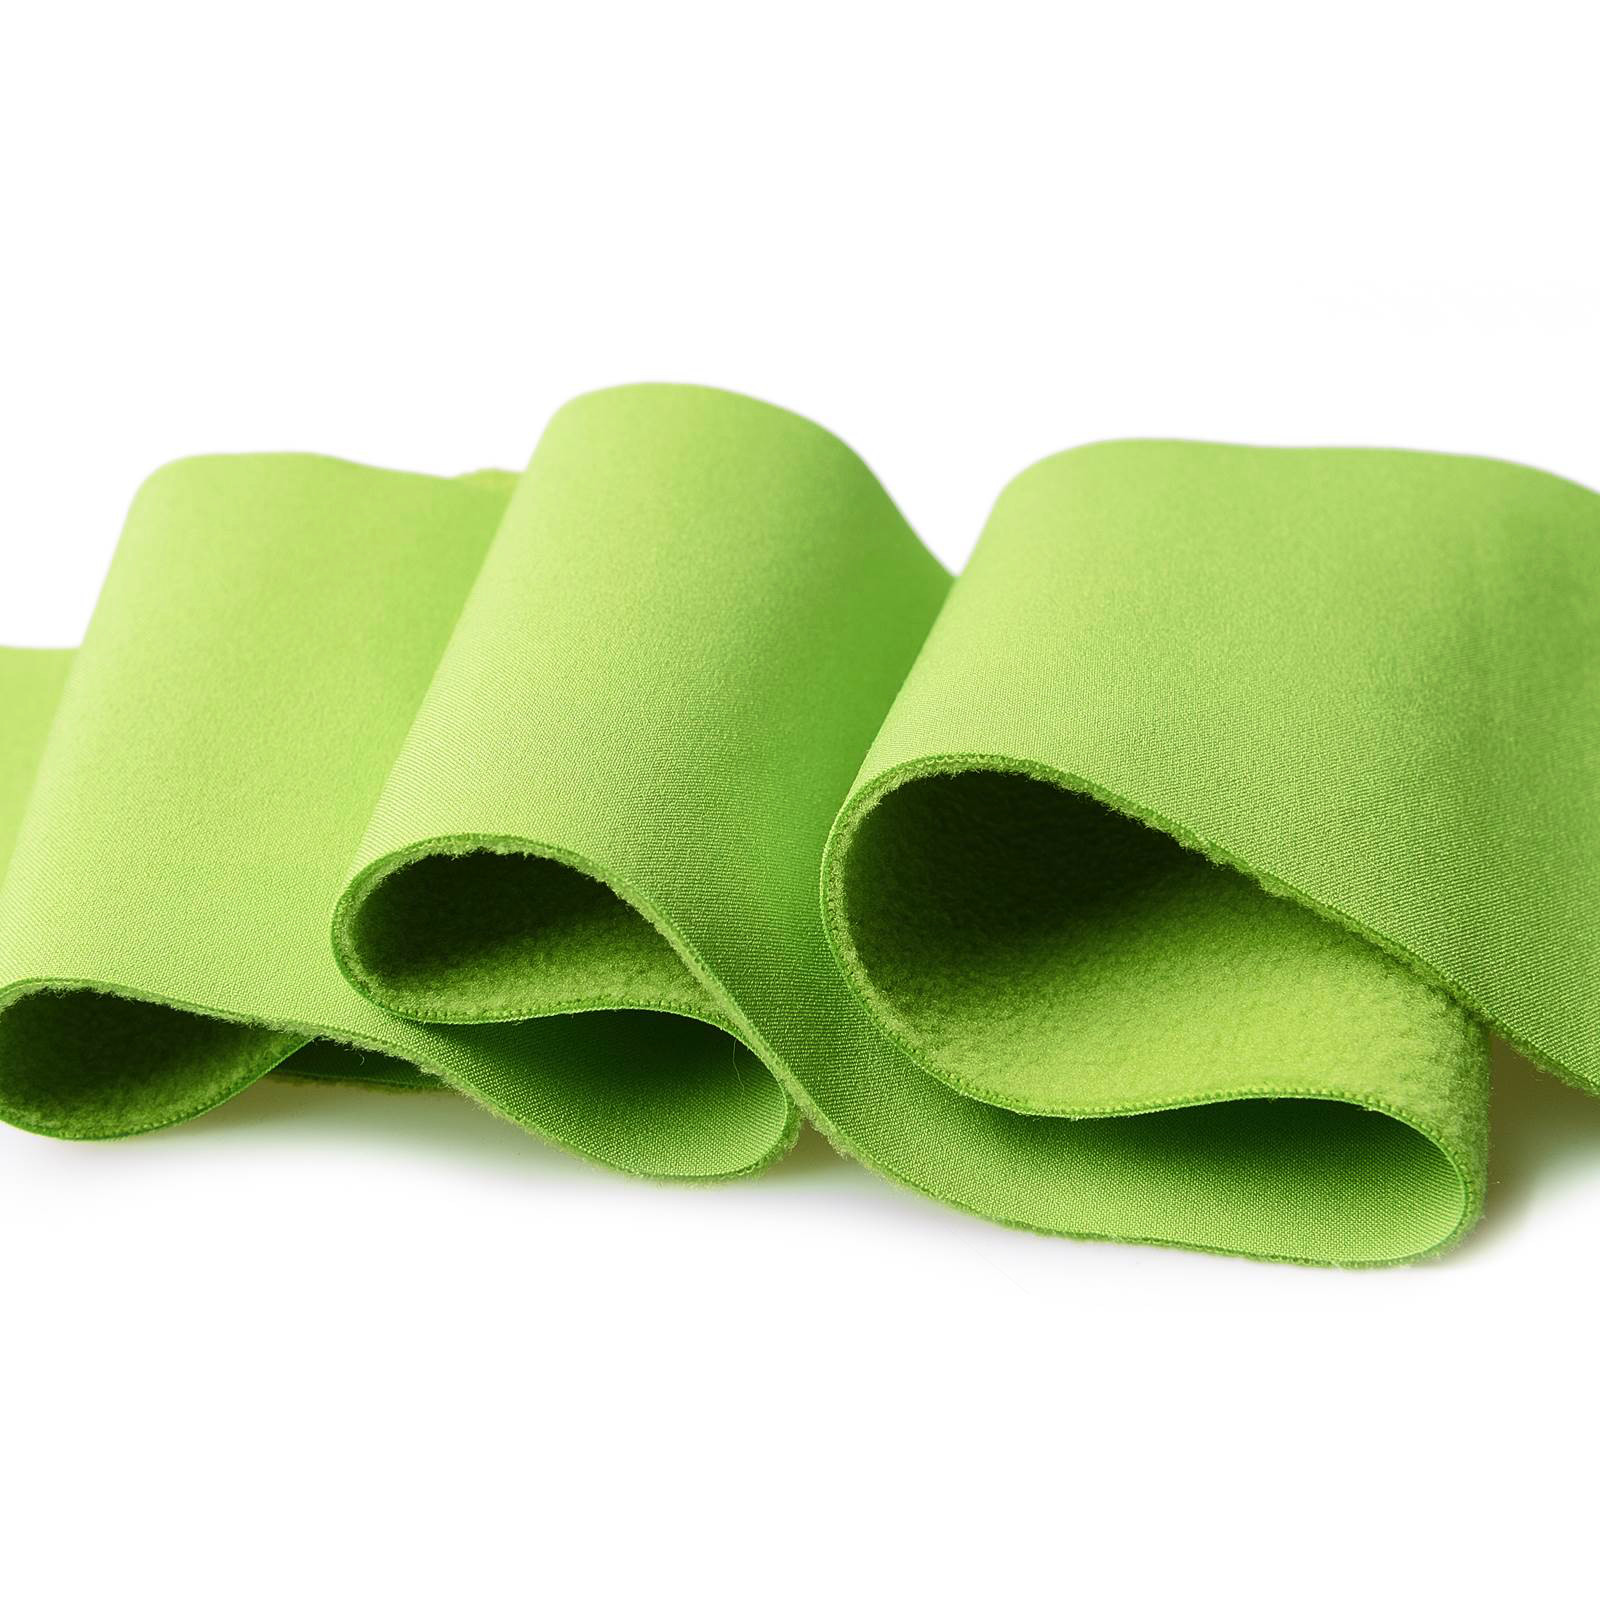 Softshell – A prueba de viento, impermeable y transpirable (lima)